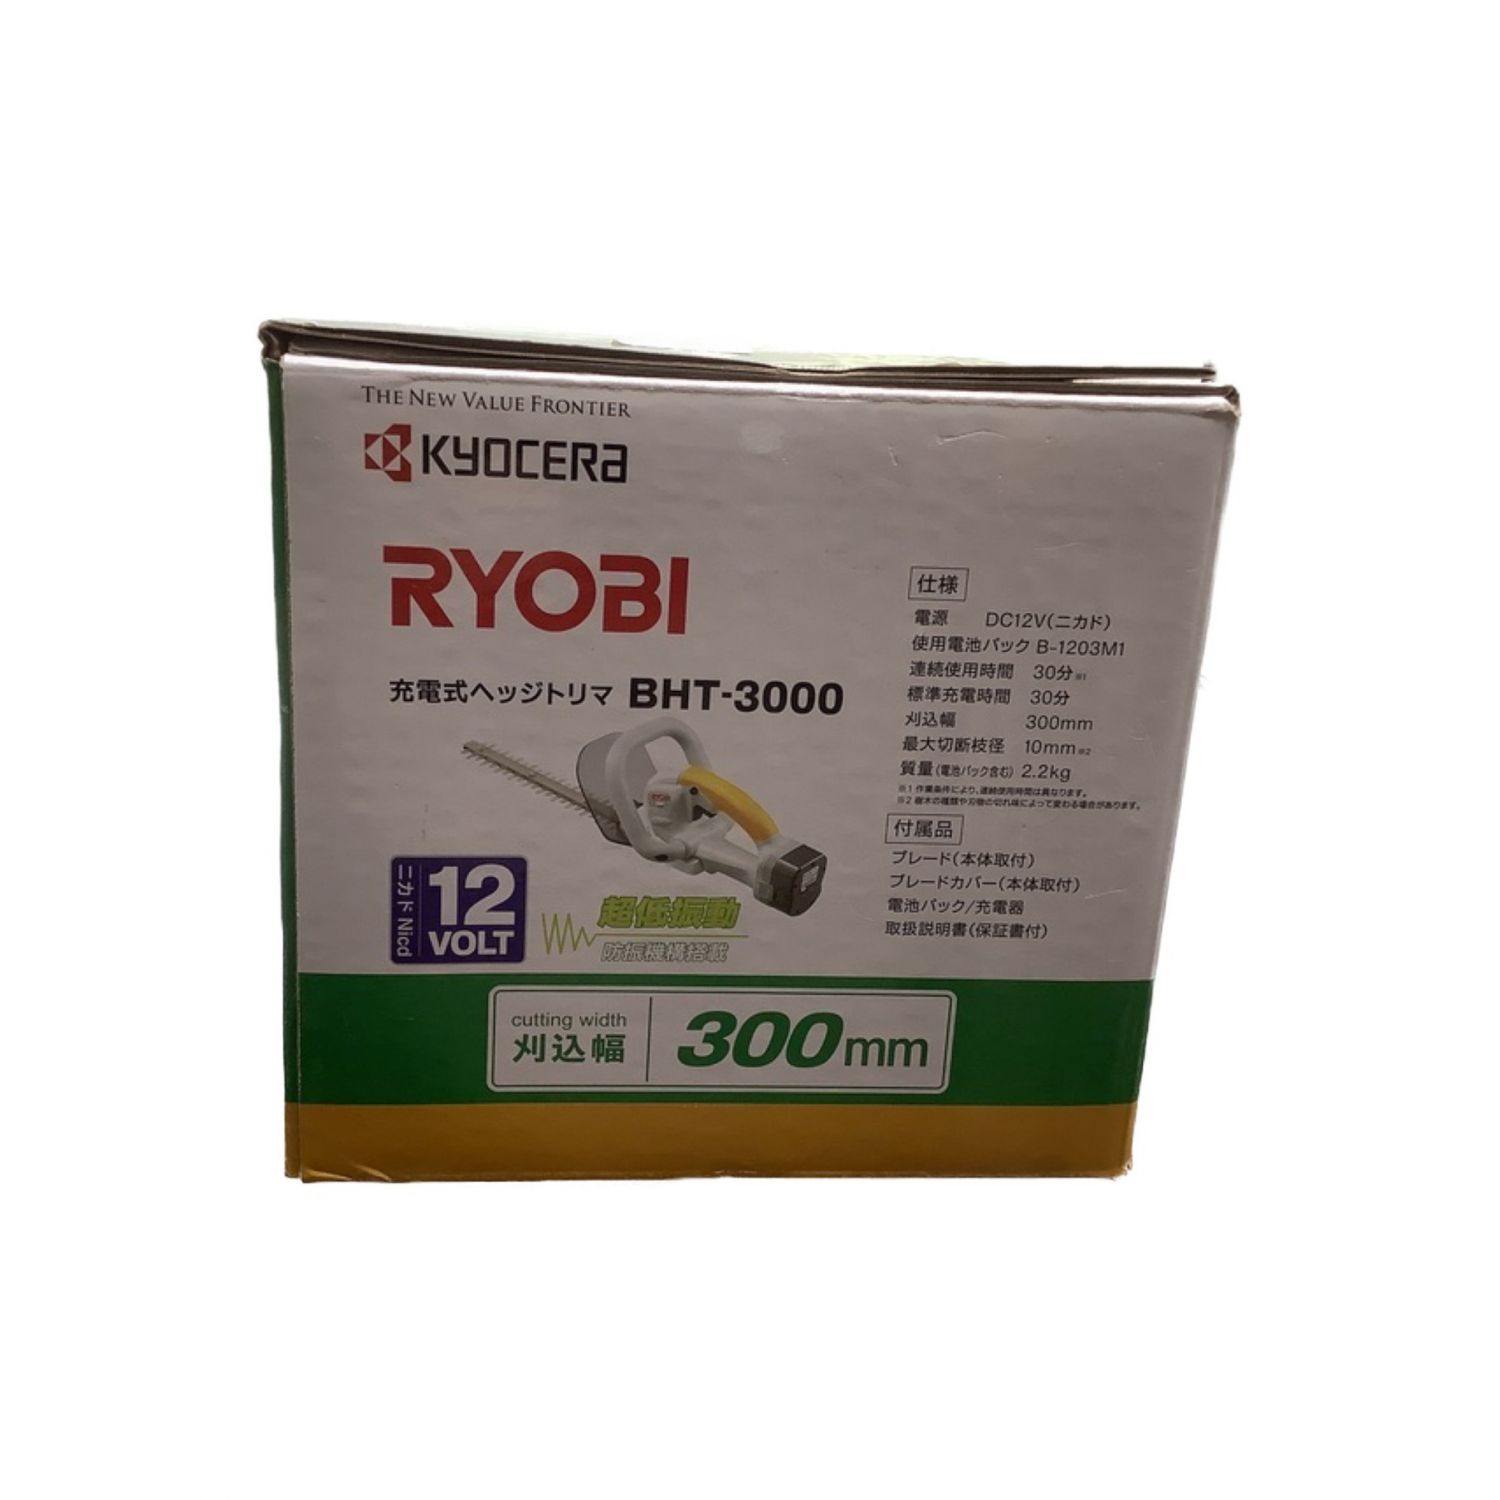 リョービ(RYOBI) 充電式ヘッジトリマ BHT-3000 刈込幅300mm 666000A - 1